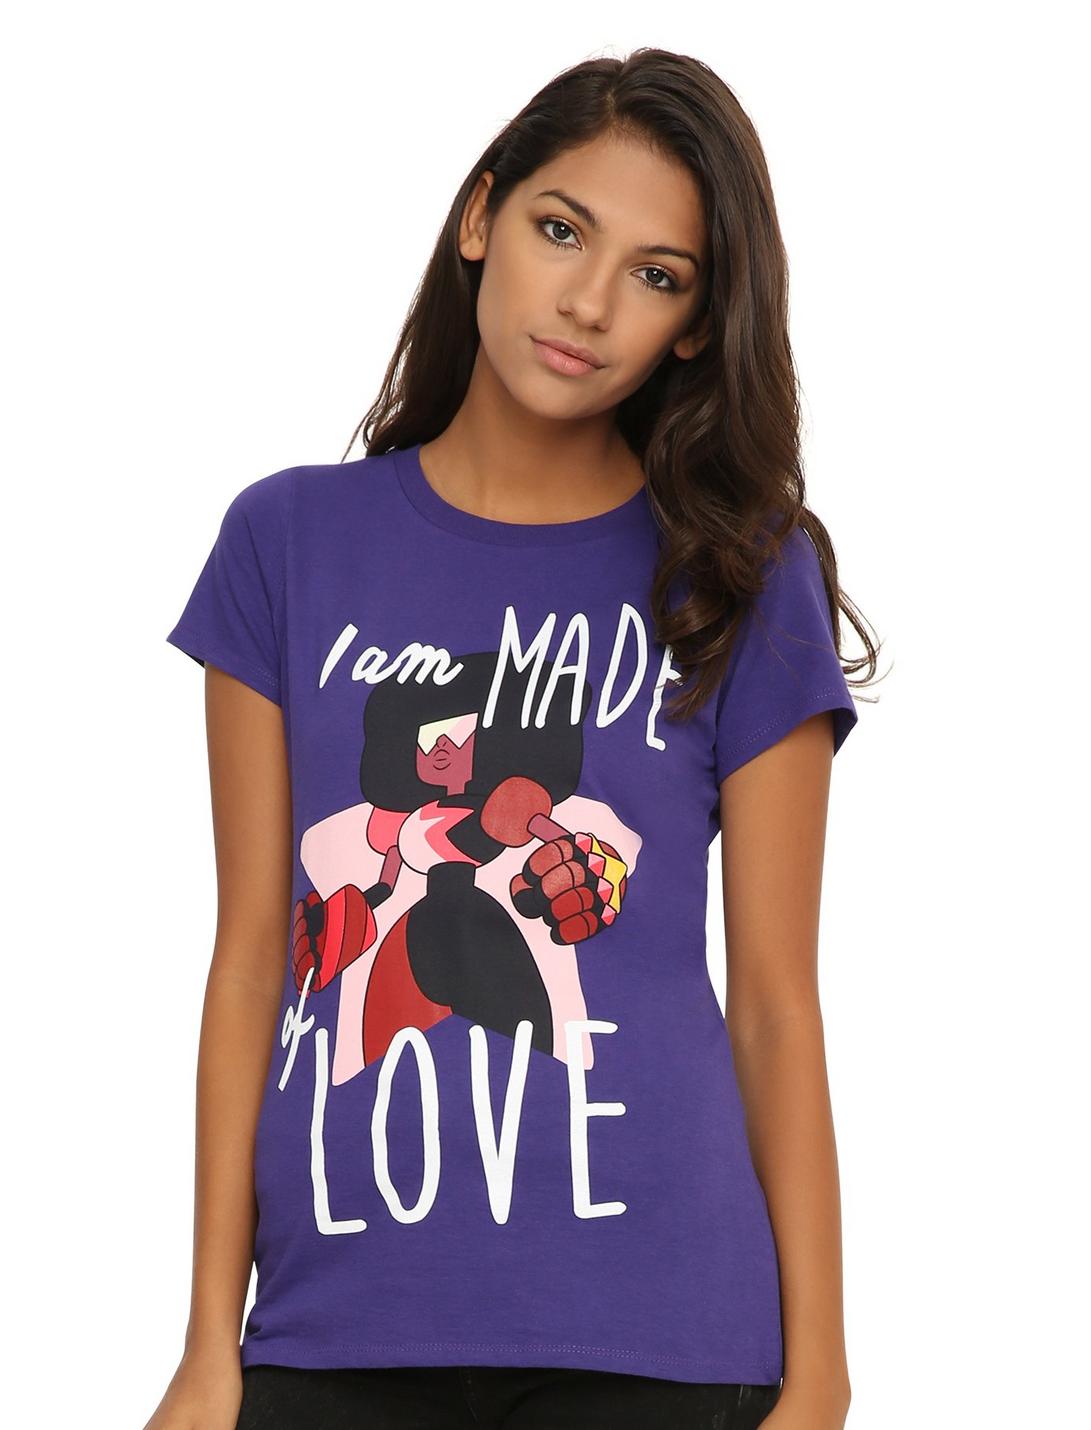 Steven Universe Garnet Made Of Love Girls T-Shirt, PURPLE, hi-res